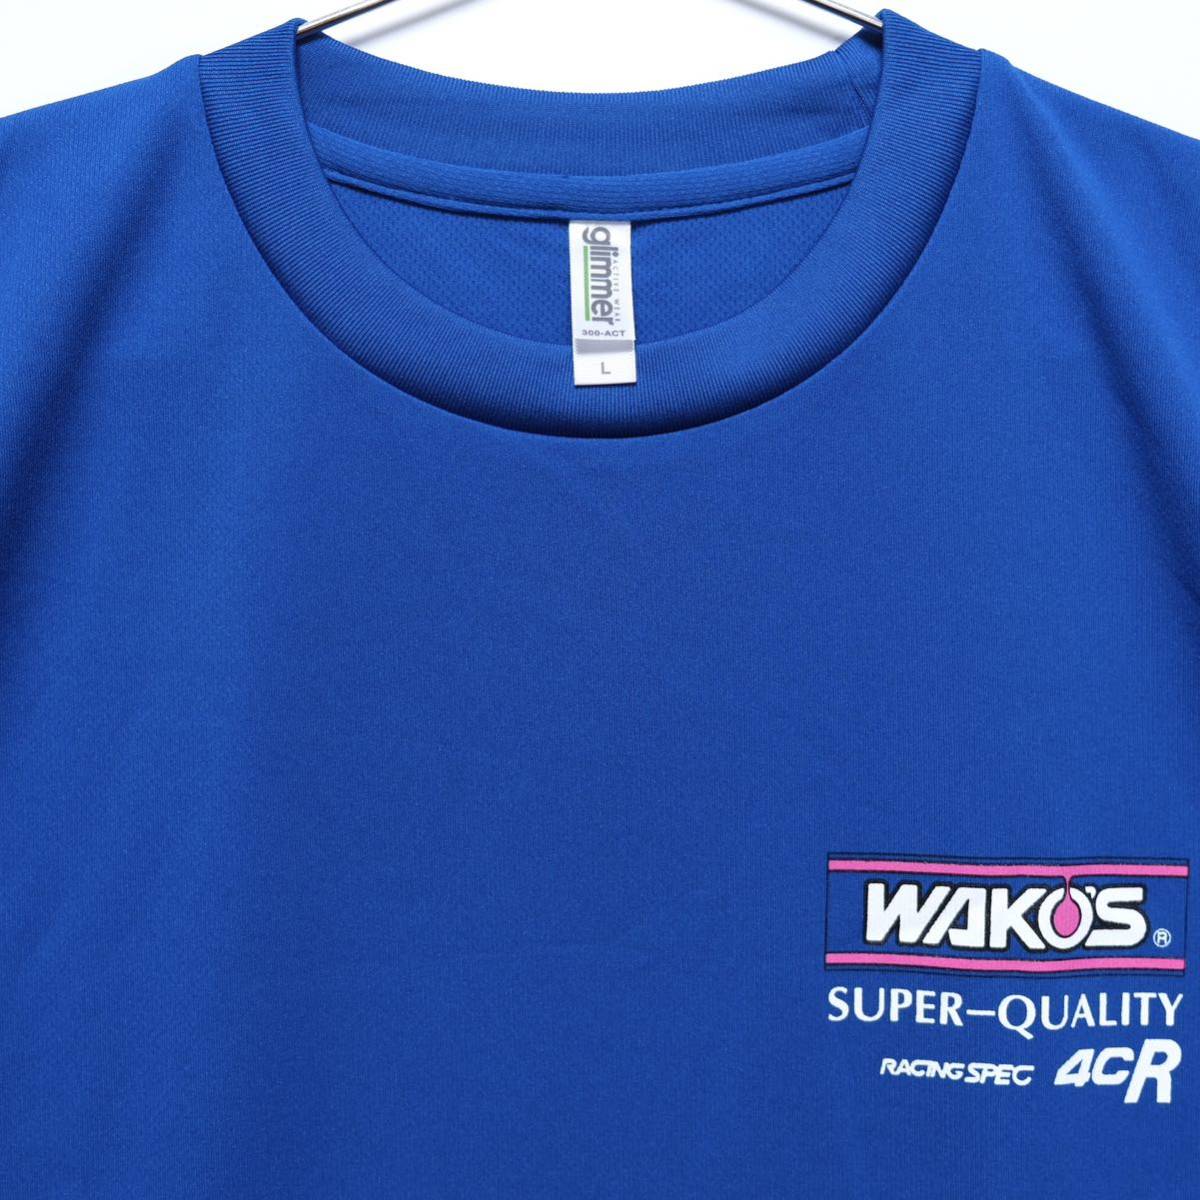 【送料無料】WAKO'S(ワコーズ)/ドライTシャツ/SUPER QUALITY RACING SPEC 4CR/吸汗速乾素材/ブルー/Lサイズの画像3